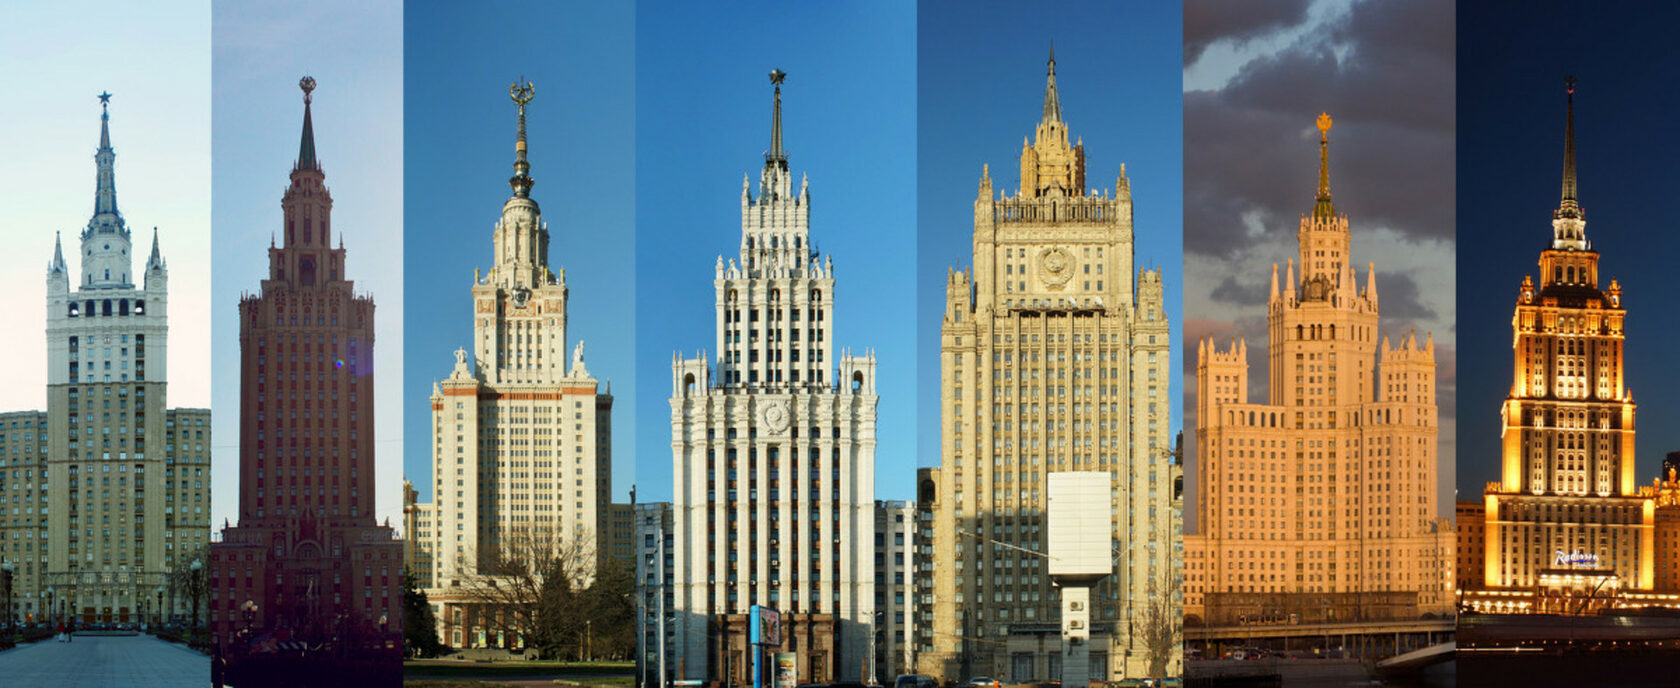 названия зданий в москве